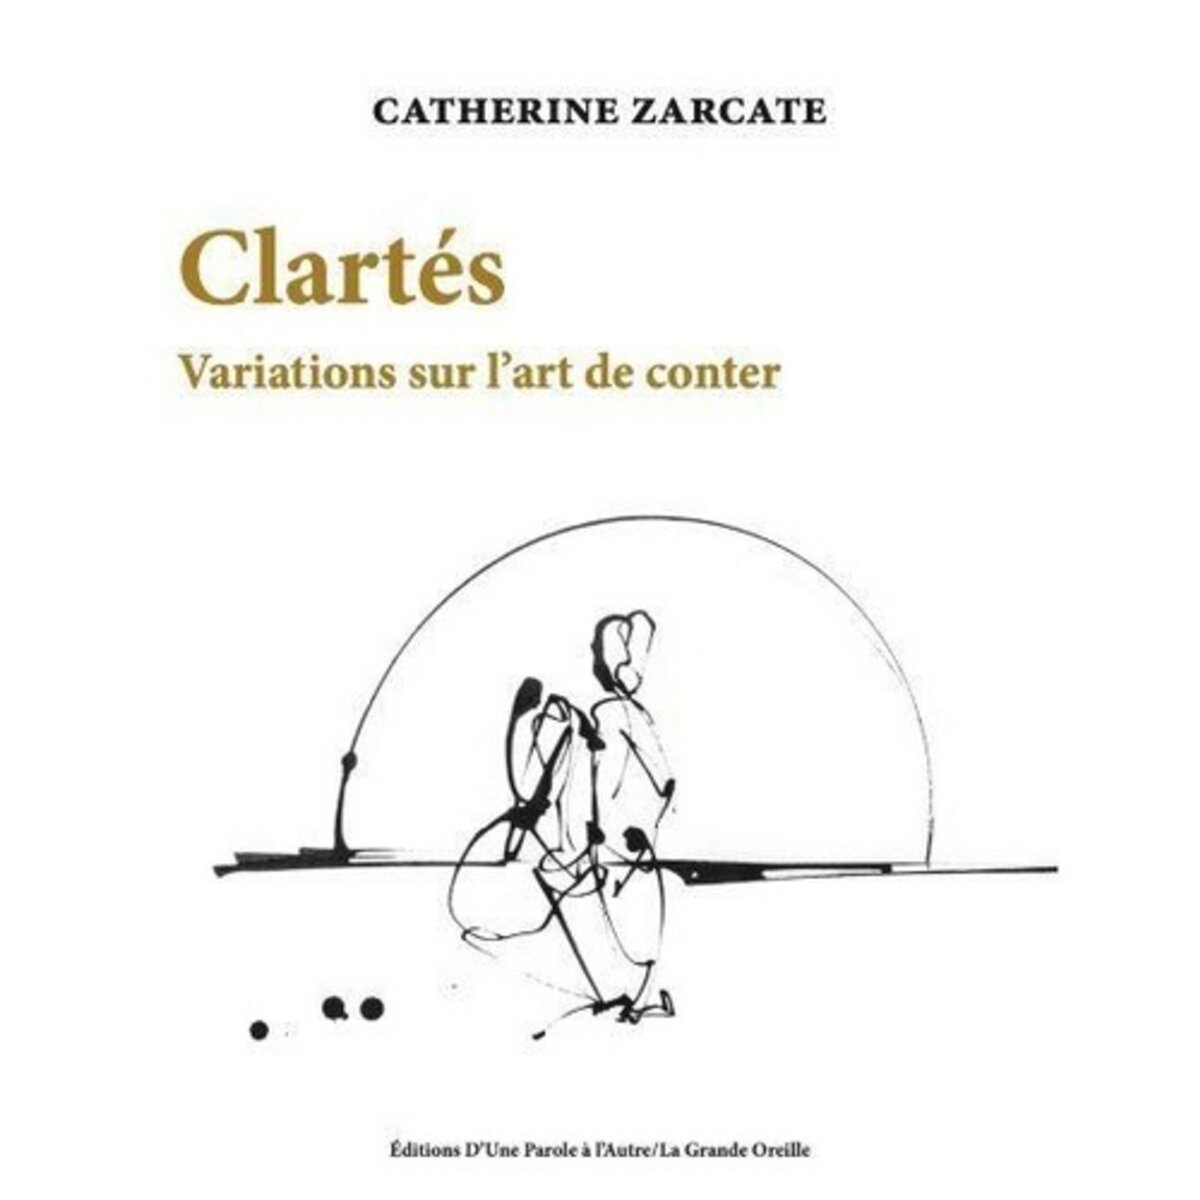  CLARTES. VARIATIONS SUR L'ART DE CONTER, Zarcate Catherine